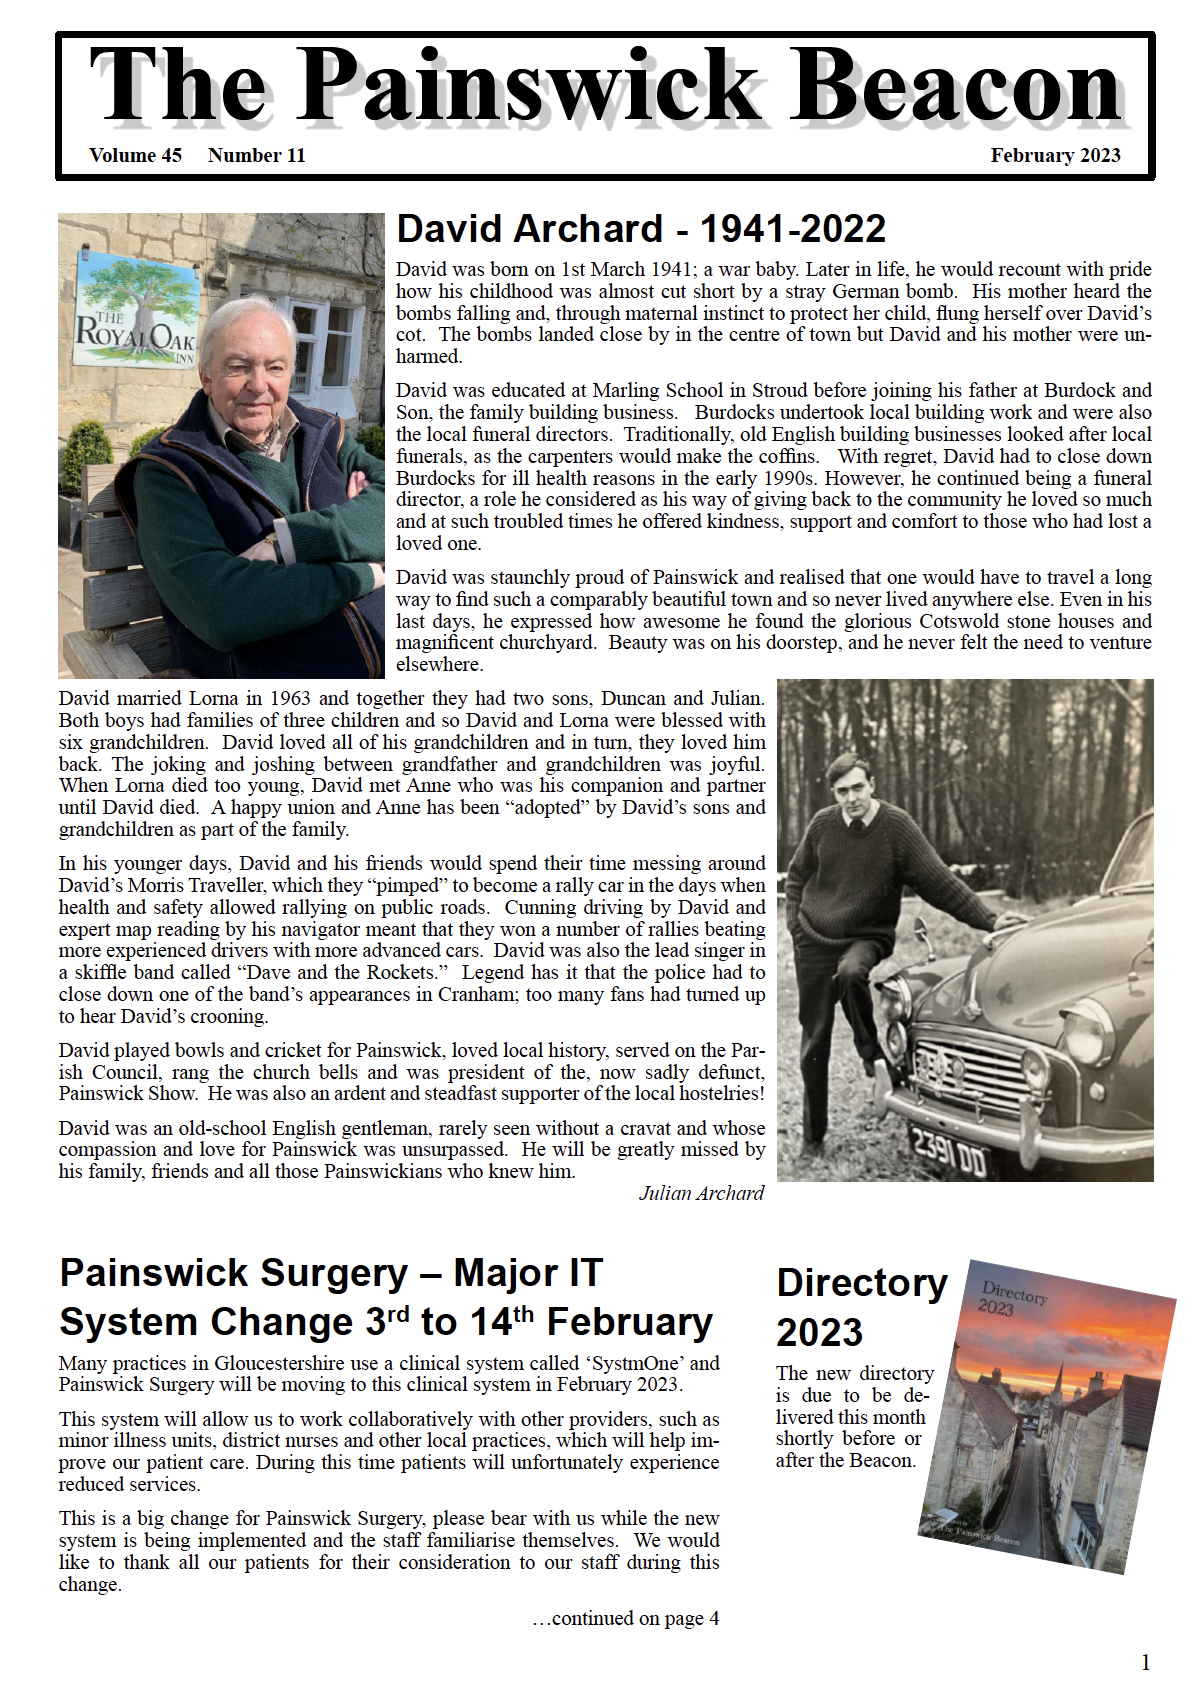 Painswick Beacon February 2023 Edition